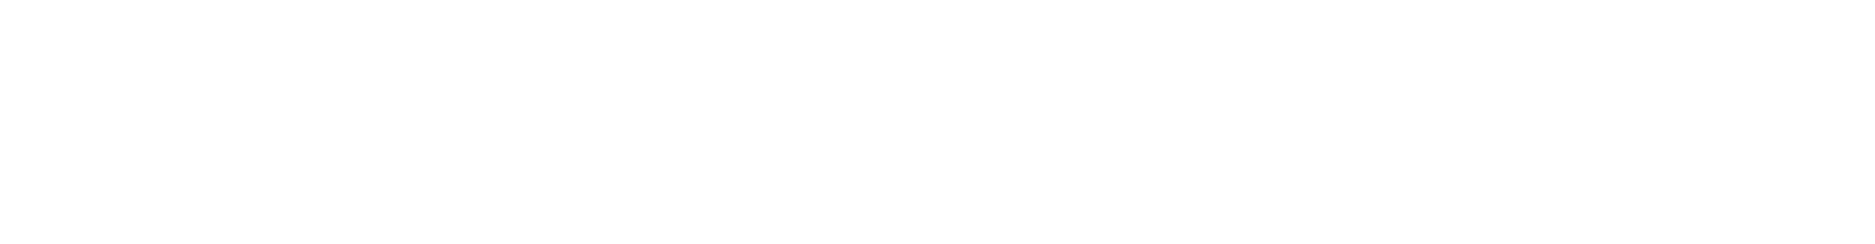 Pro Service - OG Logo white